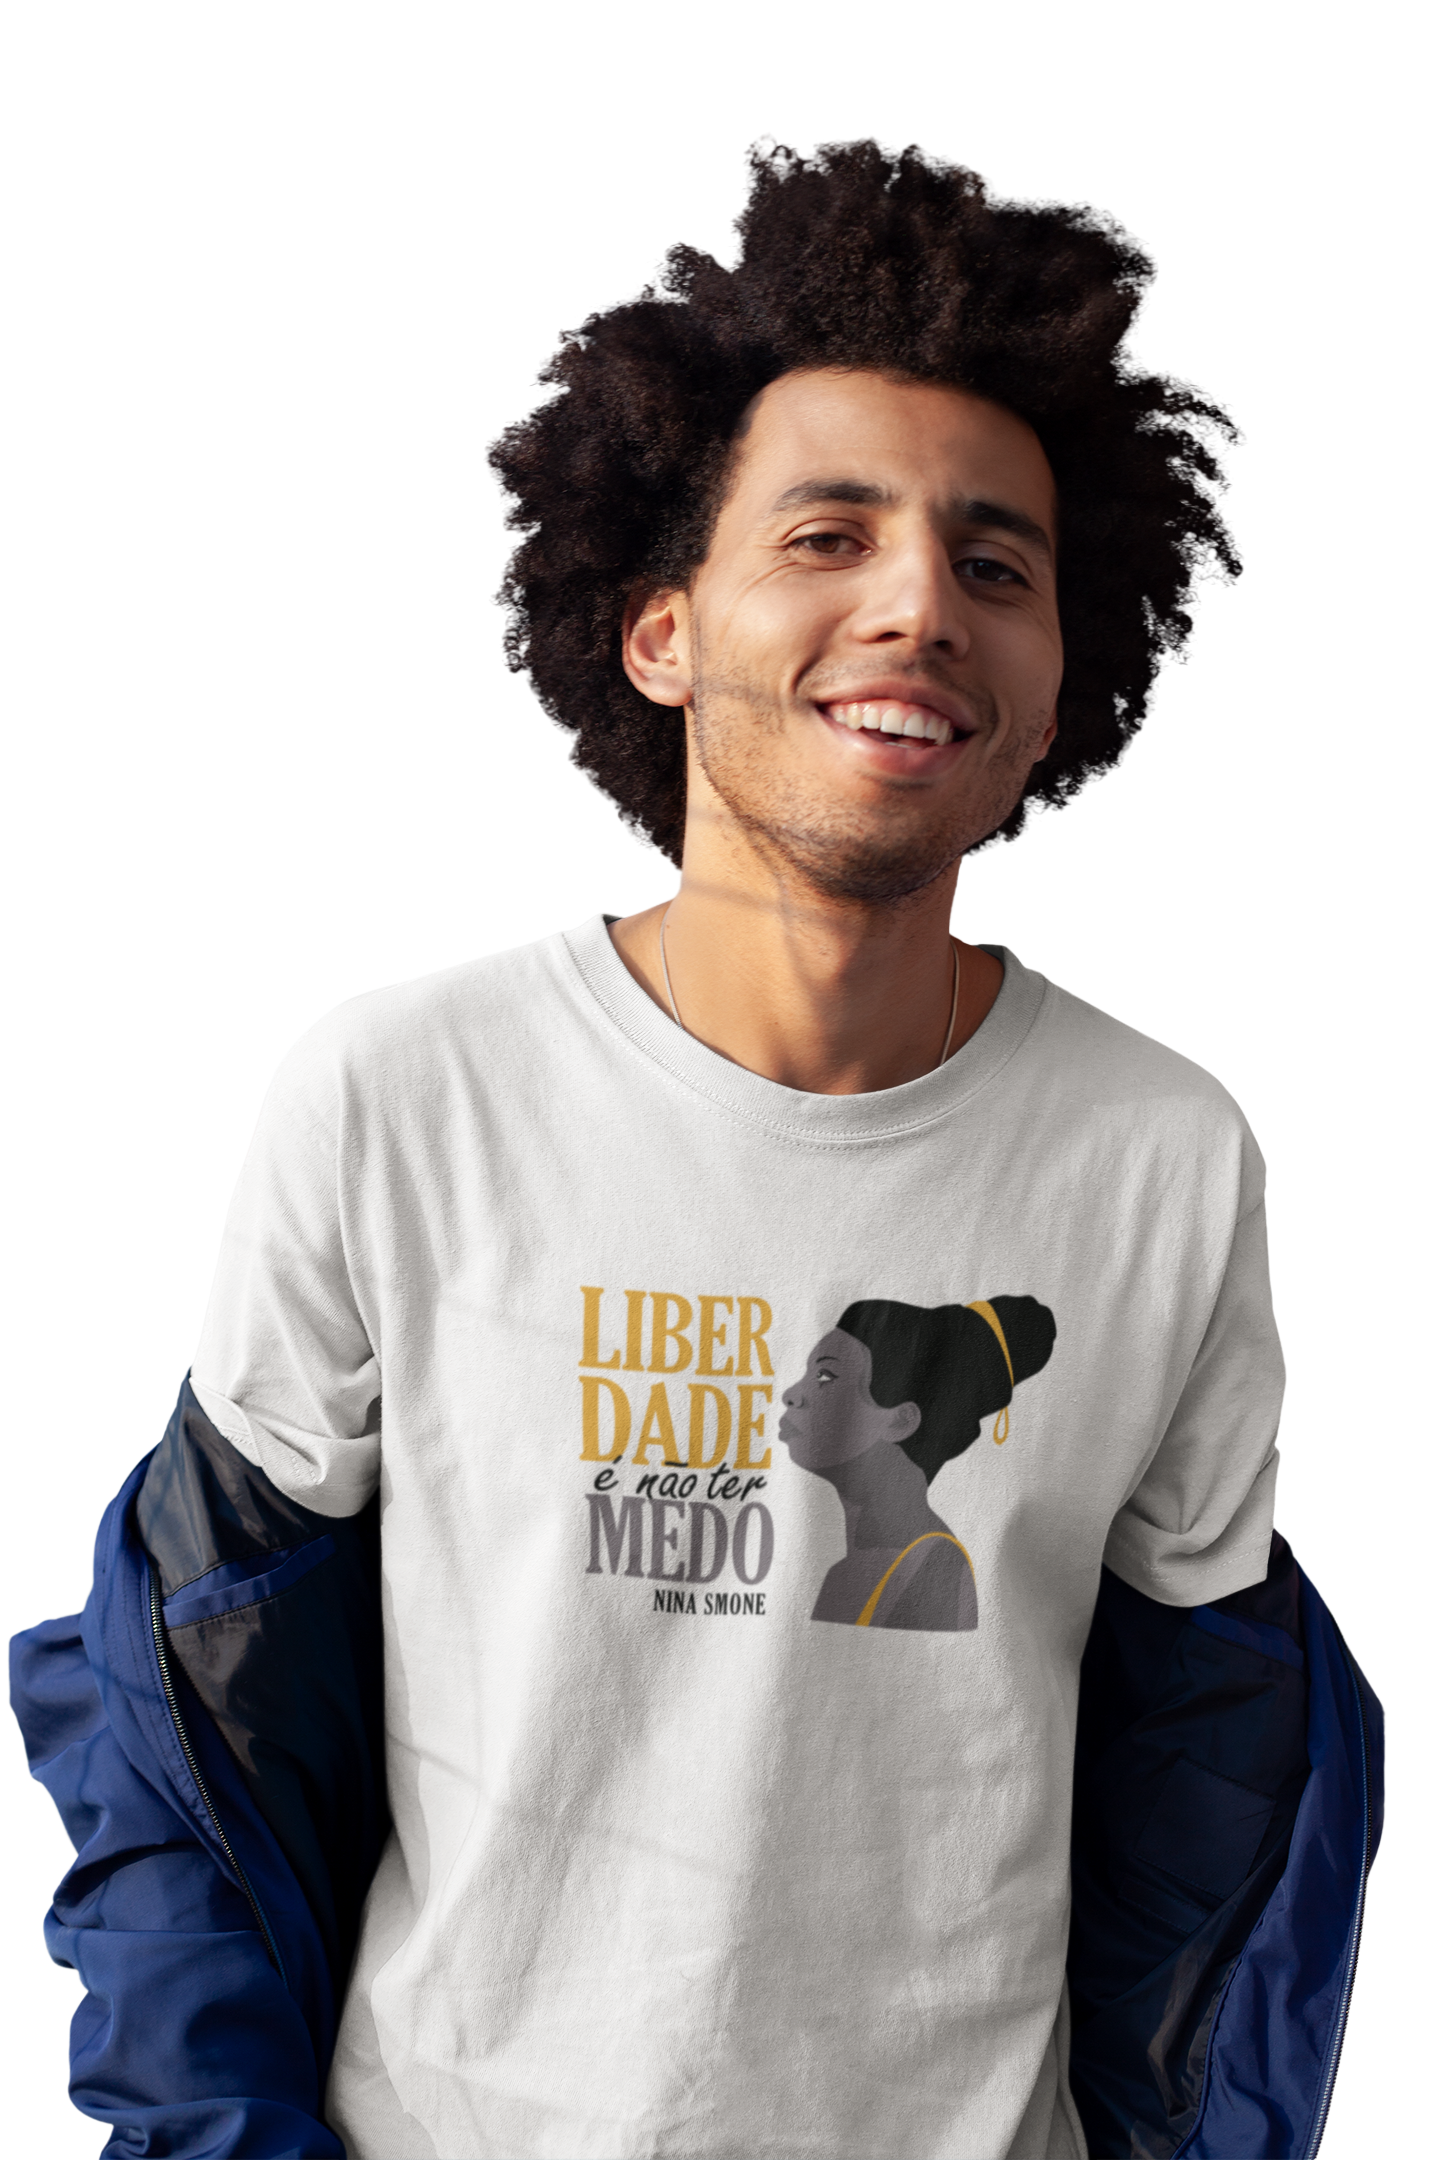 homem vestindo a camiseta masculina cor branca com uma estampa de ilustração de Nina Simone e a frase "liberdade é não ter medo"